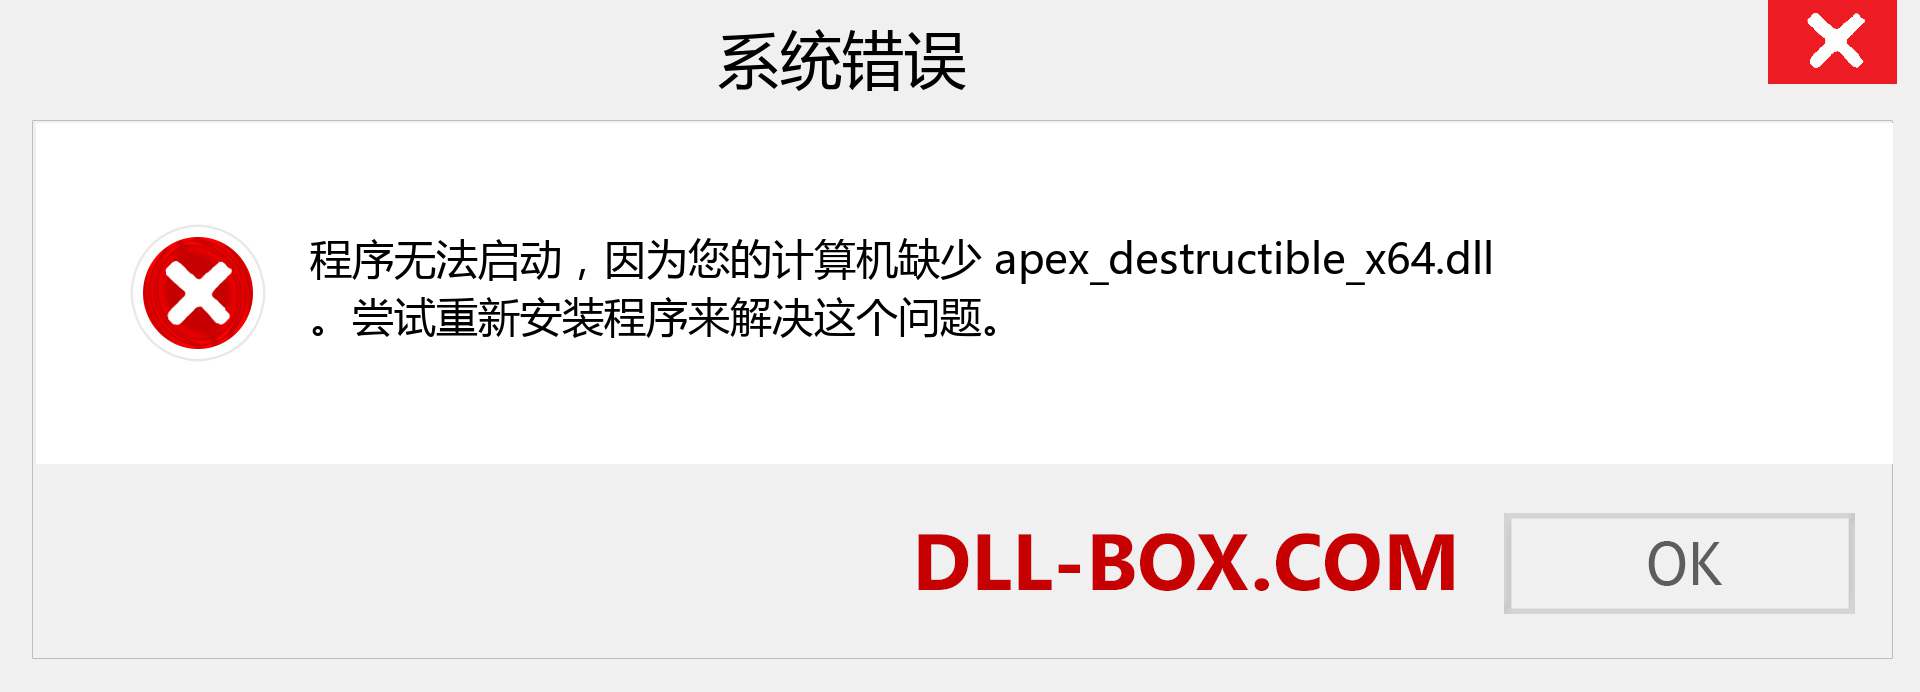 apex_destructible_x64.dll 文件丢失？。 适用于 Windows 7、8、10 的下载 - 修复 Windows、照片、图像上的 apex_destructible_x64 dll 丢失错误